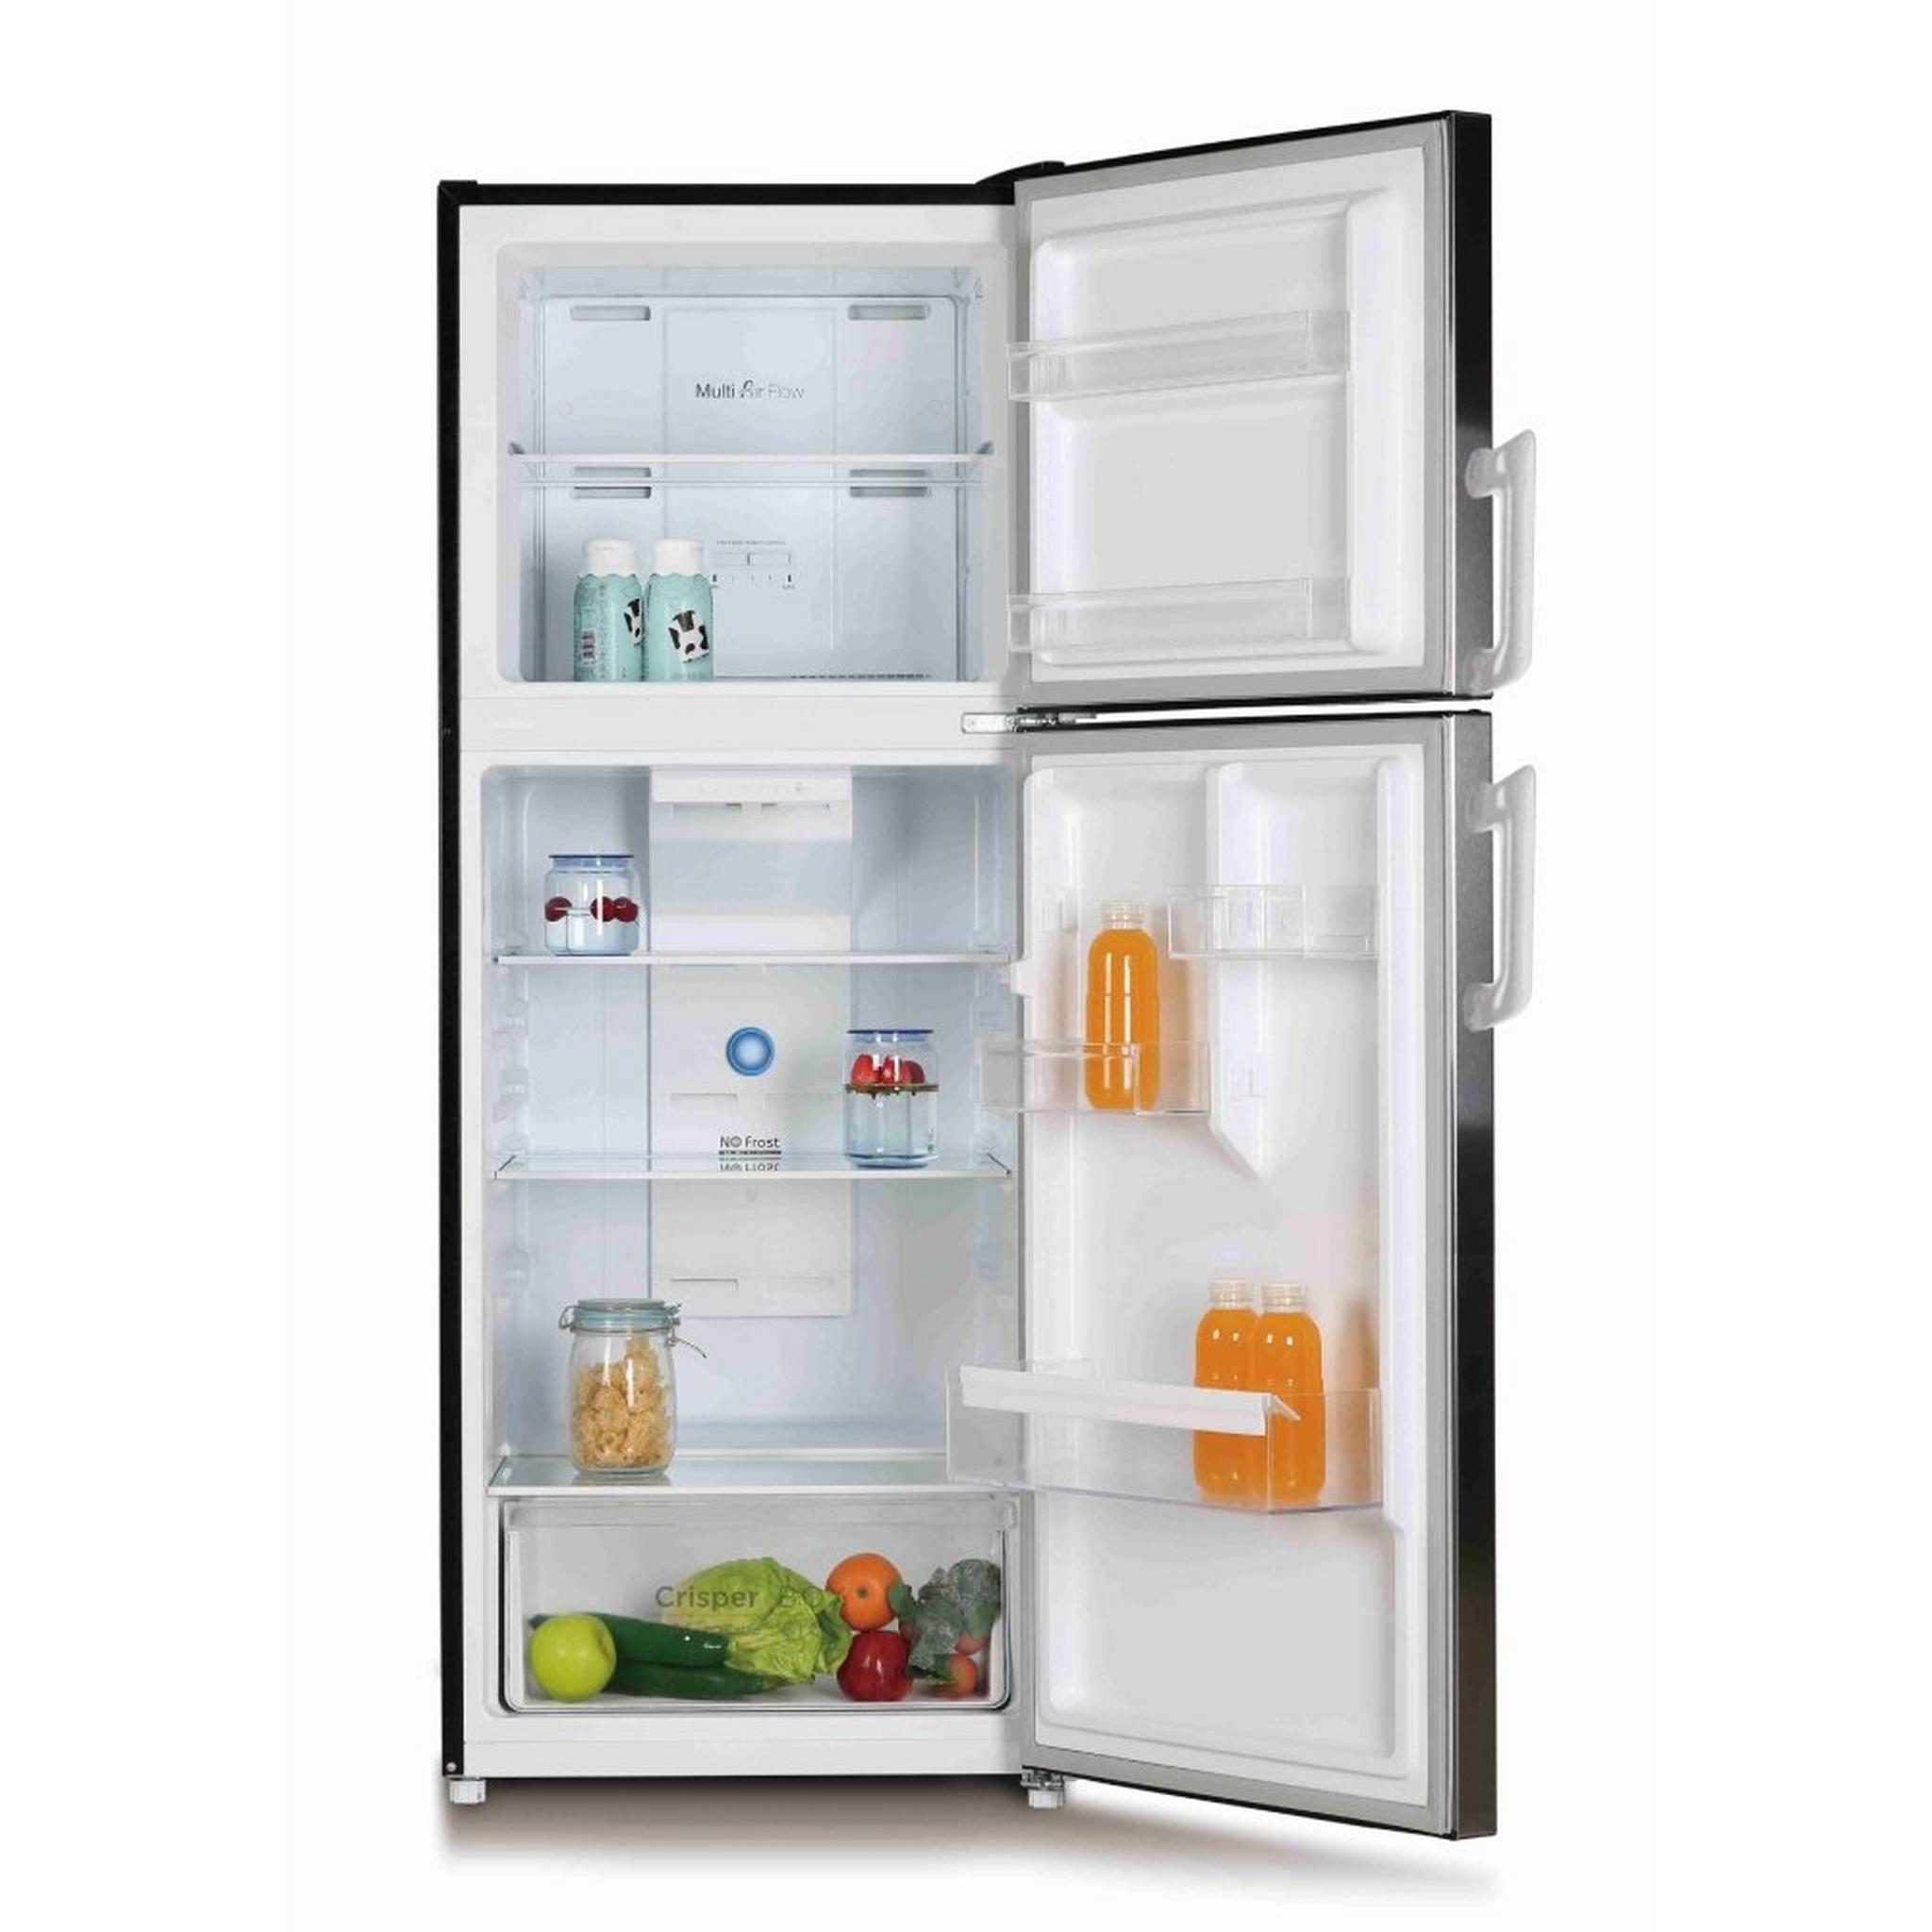 Wansa Top Mount Refrigerator, 13CFT, 365-Liters, WRTG-365-NFSSC52 - Stainless Steel